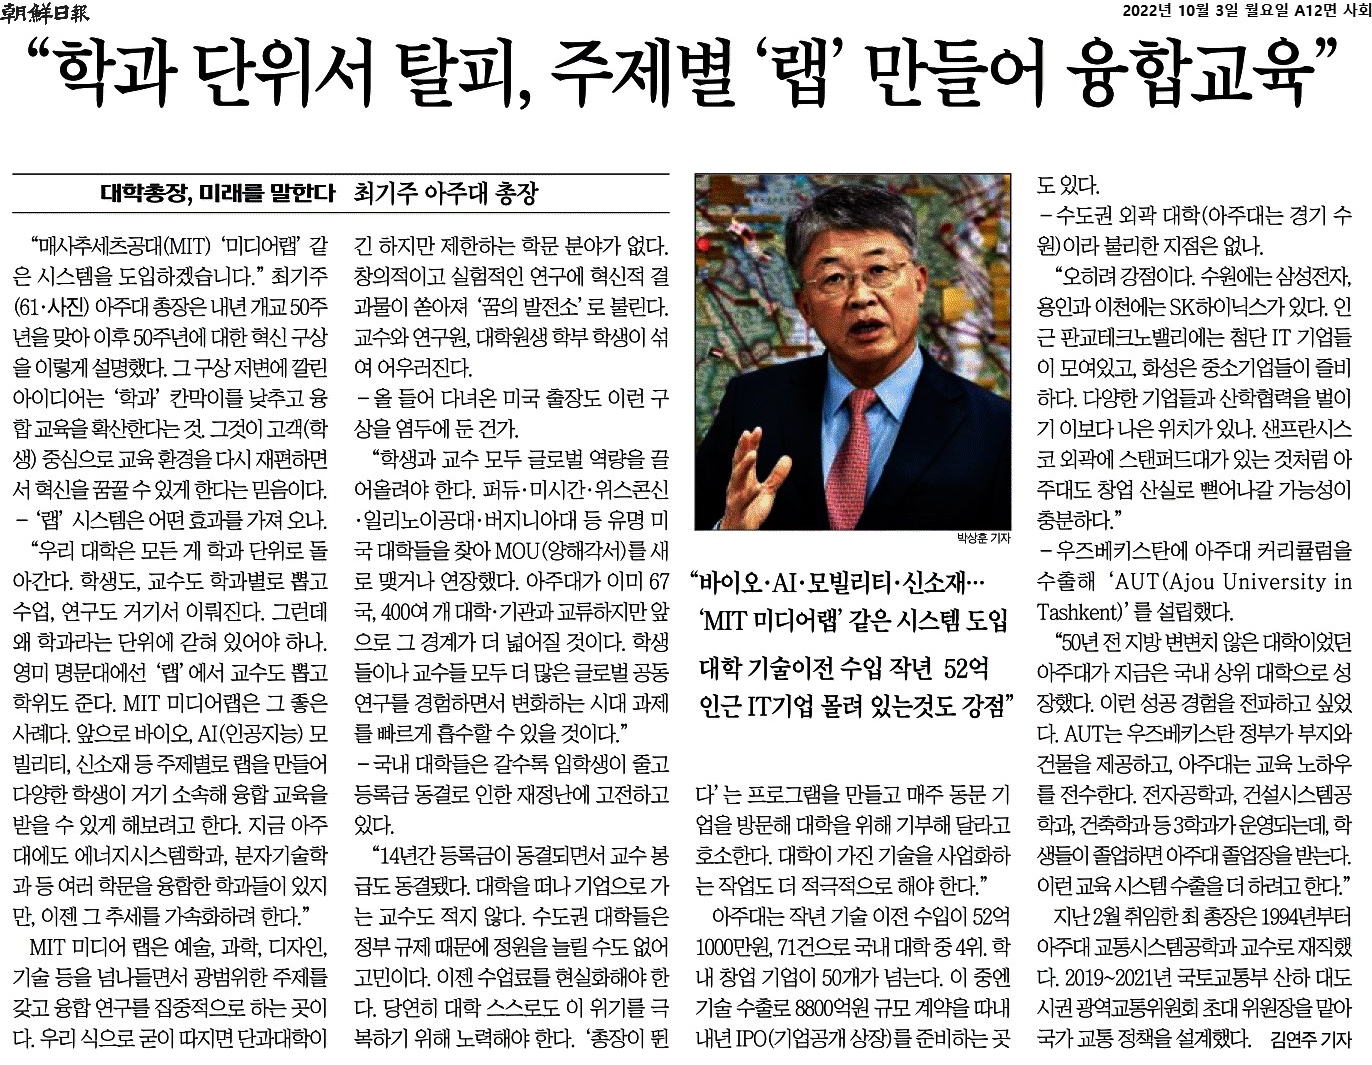 최기주 총장, 조선일보 인터뷰 "학과 단위 탈피한 융합교육 할 것"